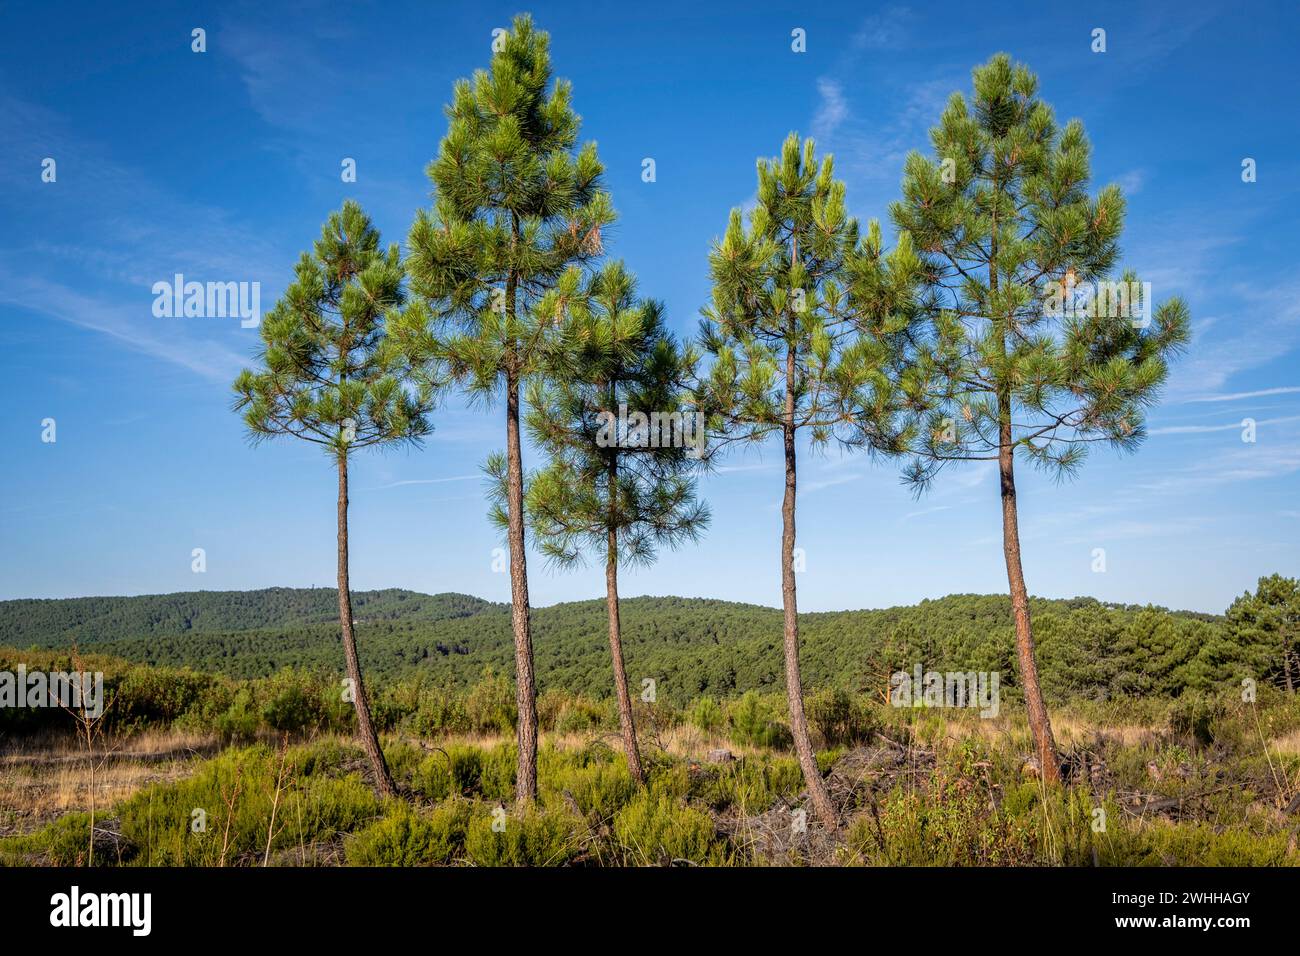 Repoblacion de bosque de pino silvestre Stock Photo